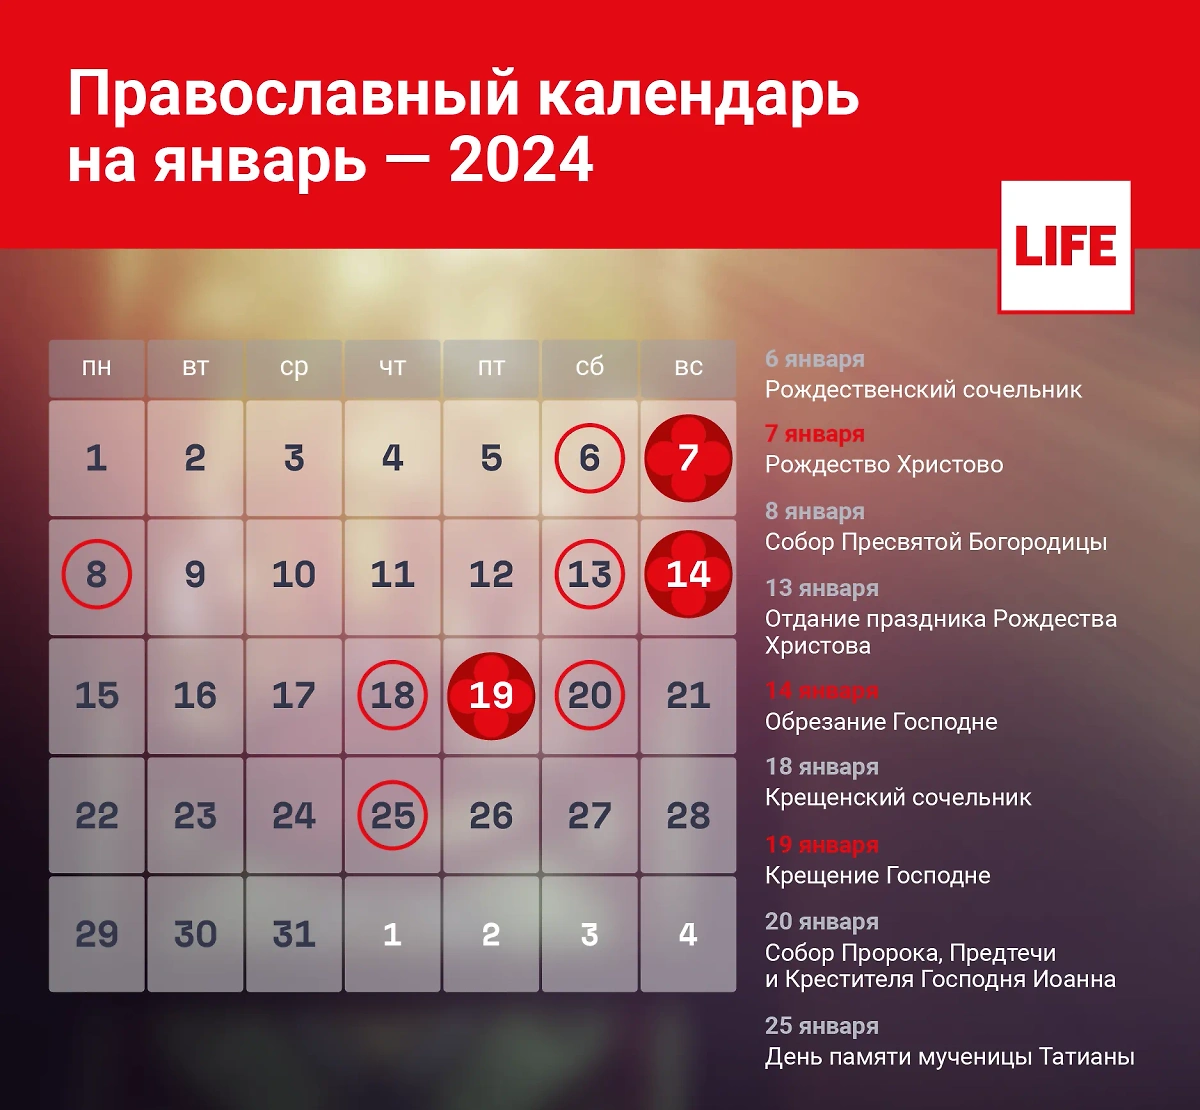 Какой сегодня церковный праздник? Православный календарь на январь 2024 года. Инфографика © LIFE